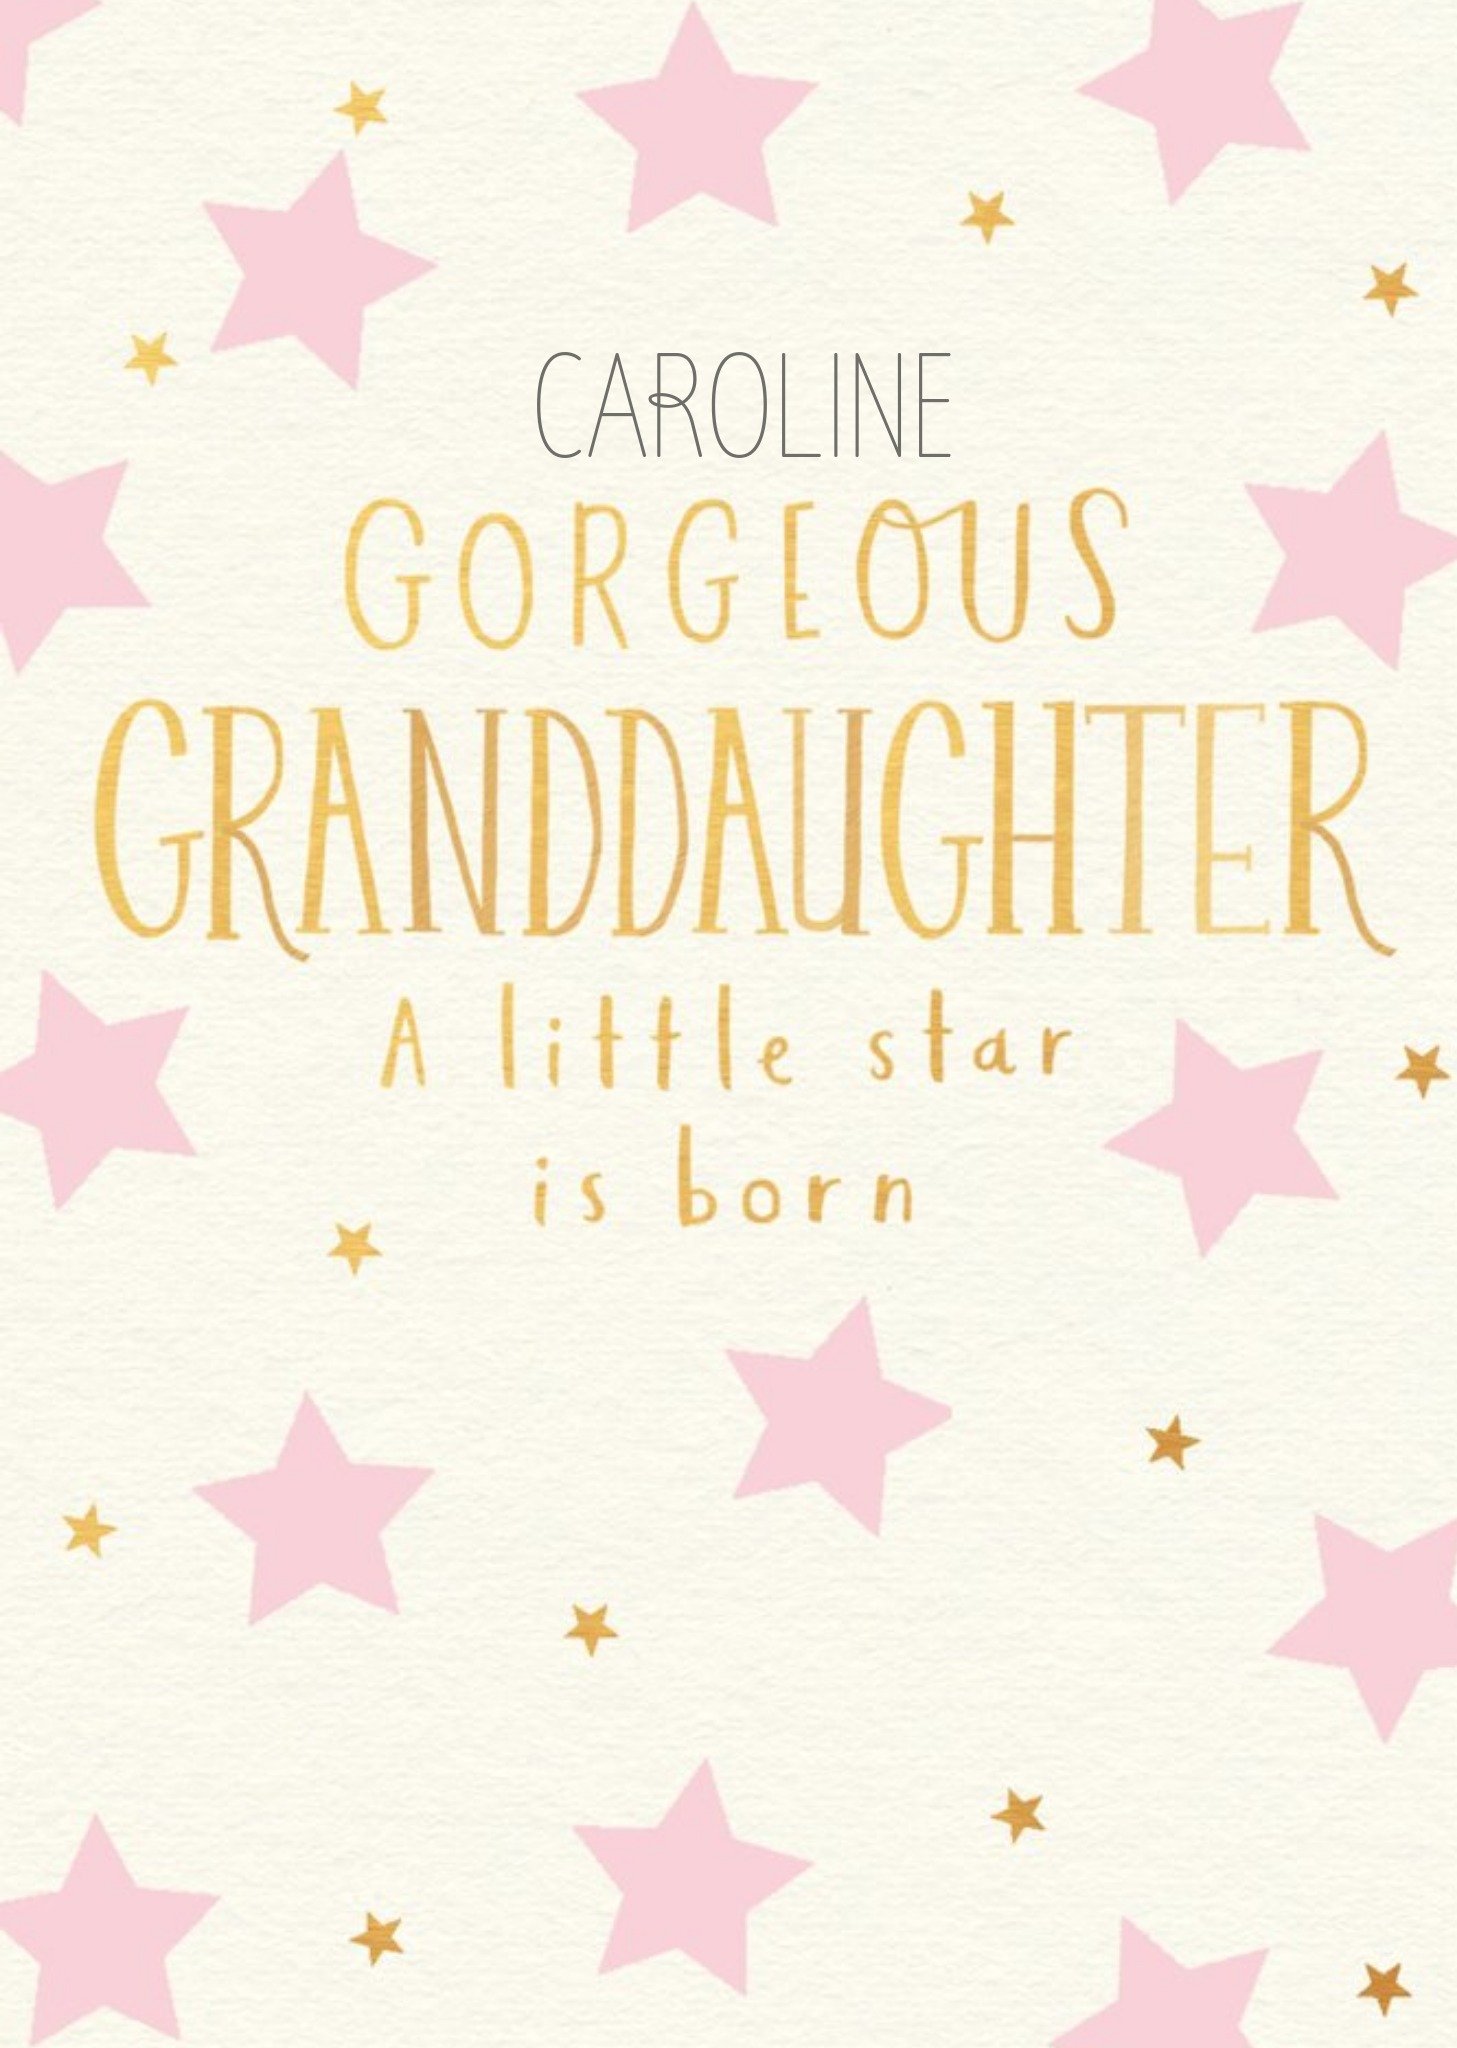 Moonpig Cute A Little Star Gorgeous Granddaughter New Baby Card Ecard